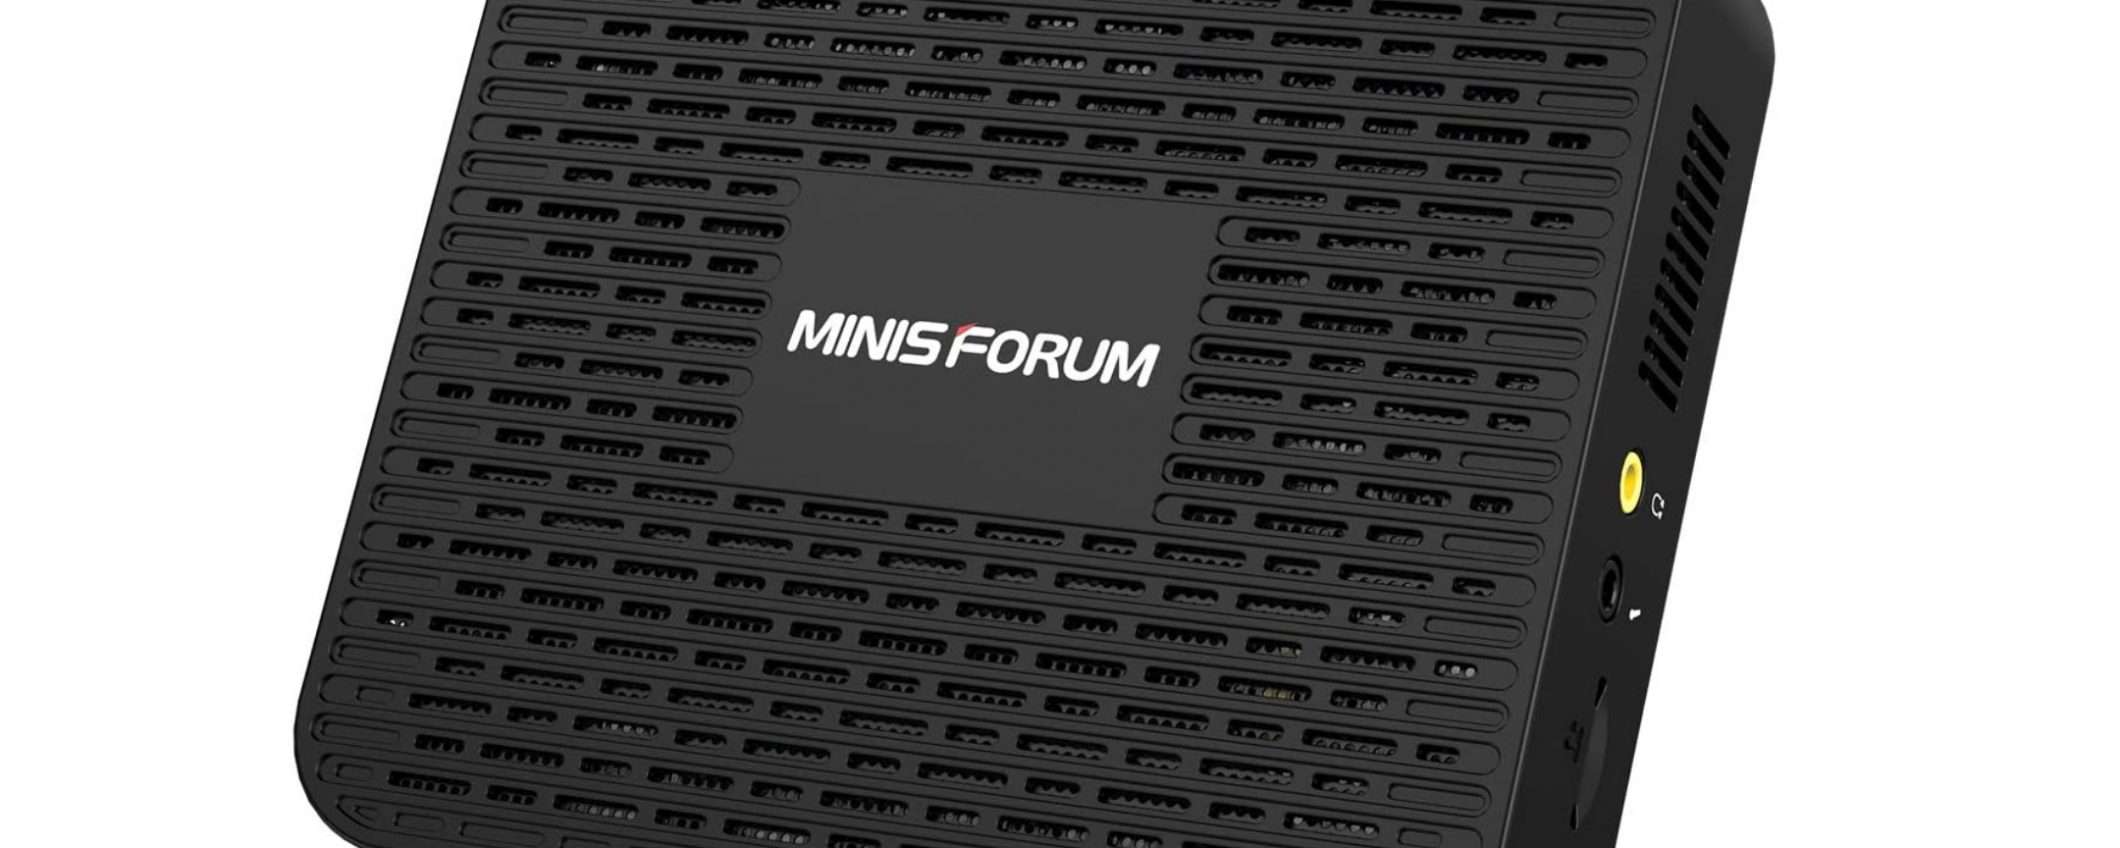 Minis Forum GK41: il Mini PC pronto per il passaggio a Windows 11